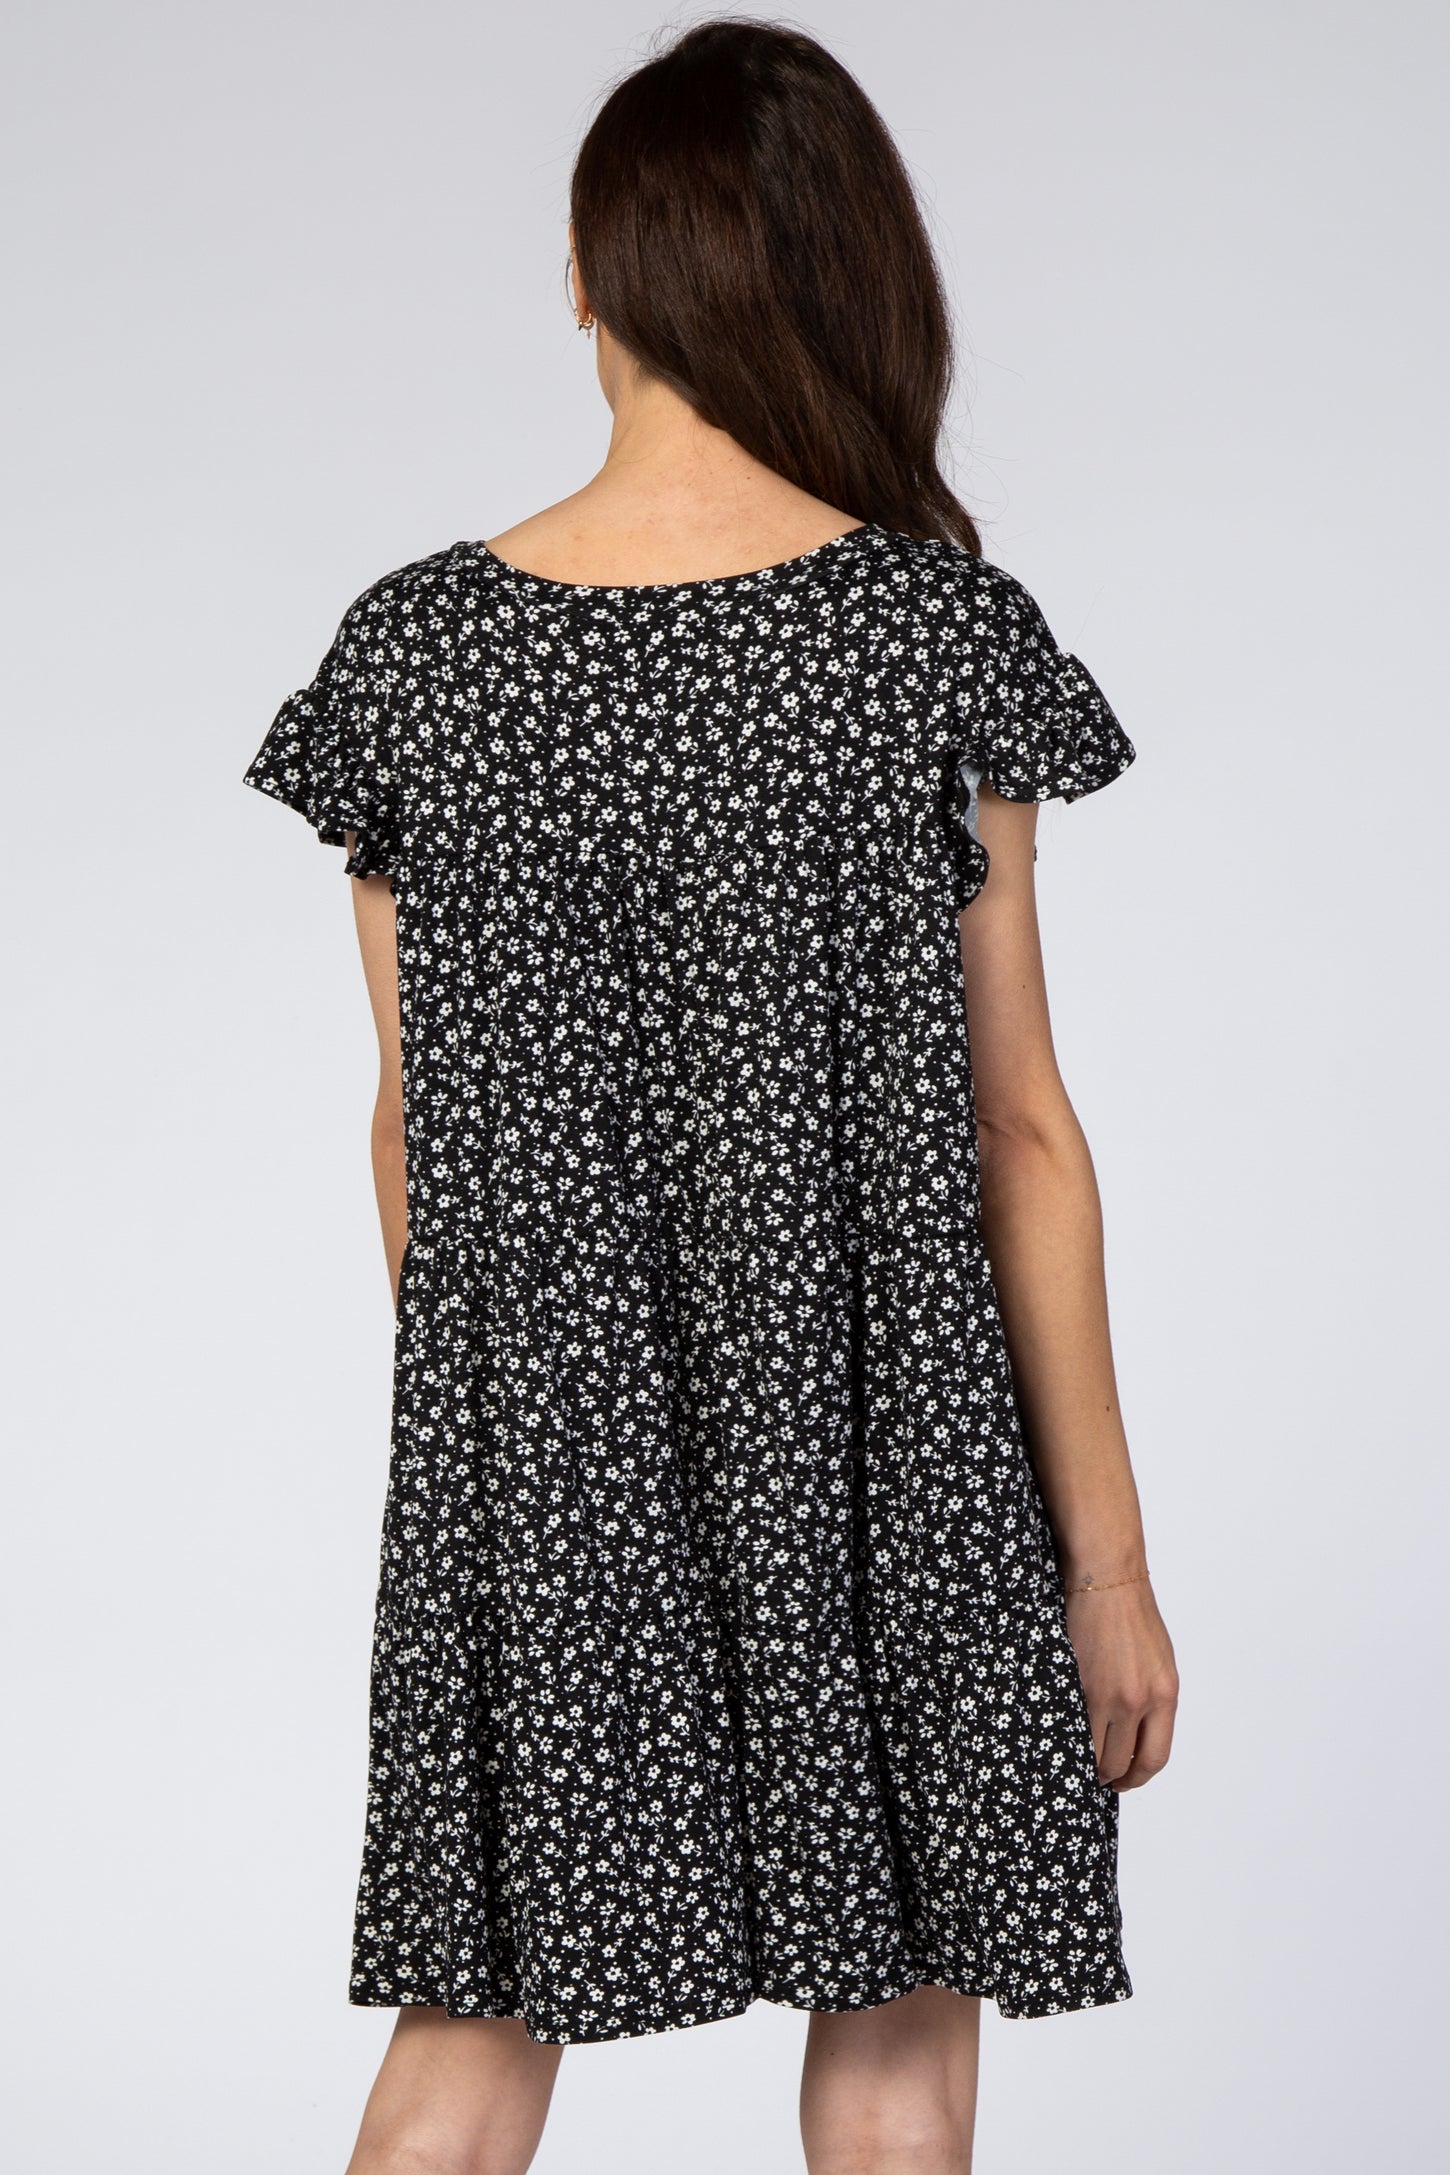 Black Floral Tiered Mini Dress– PinkBlush